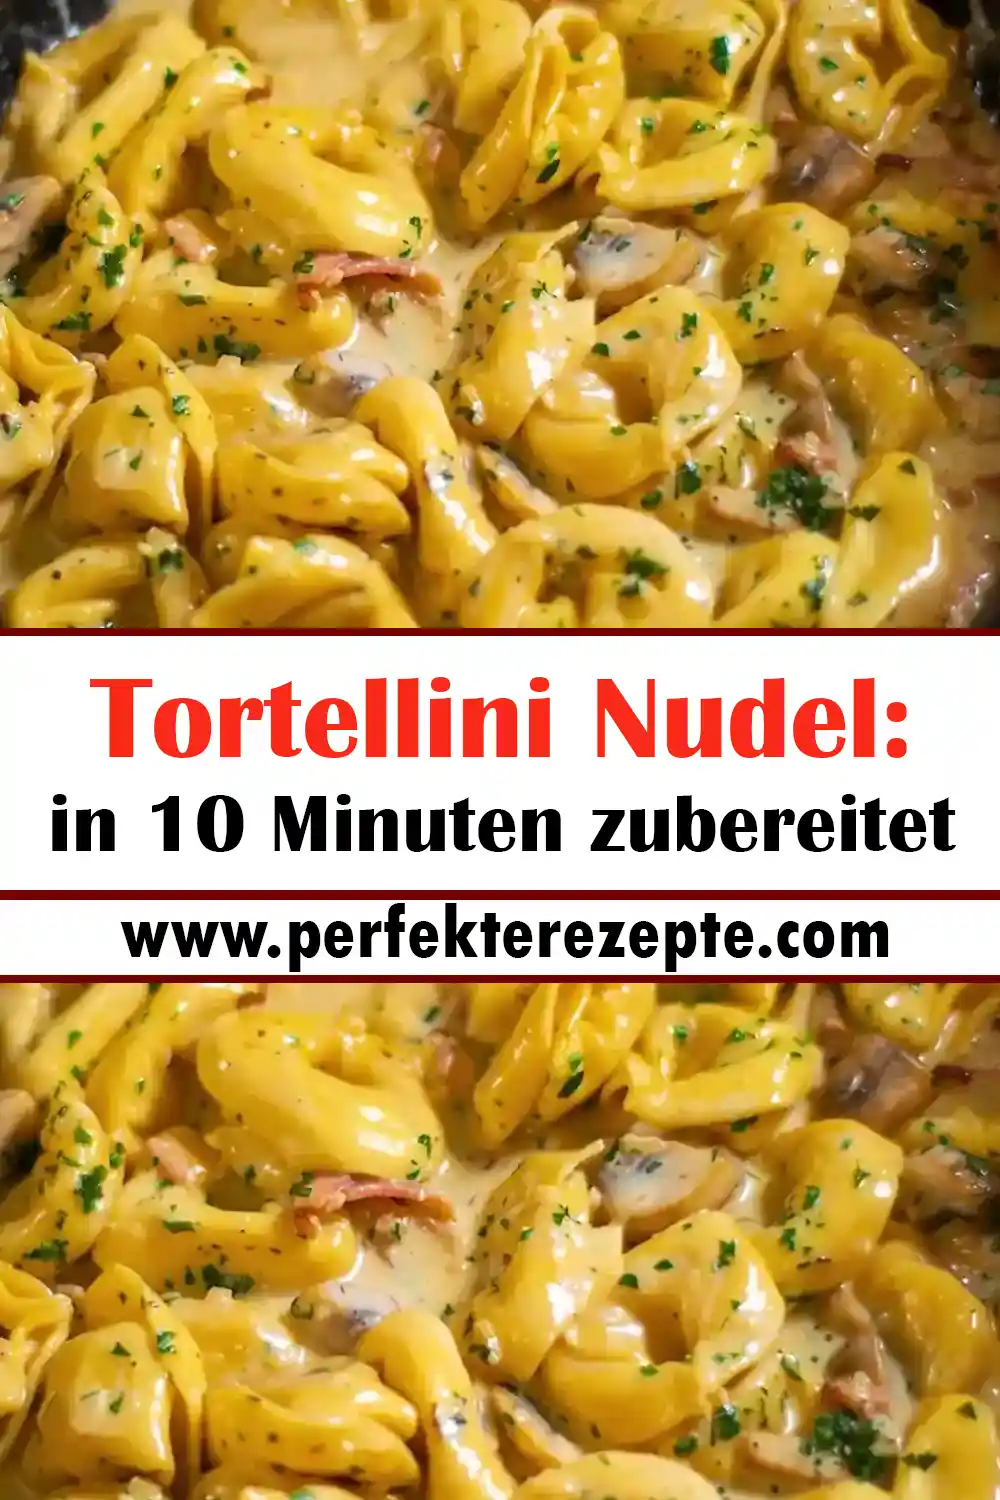 Tortellini Nudel Rezept: in 10 Minuten zubereitet